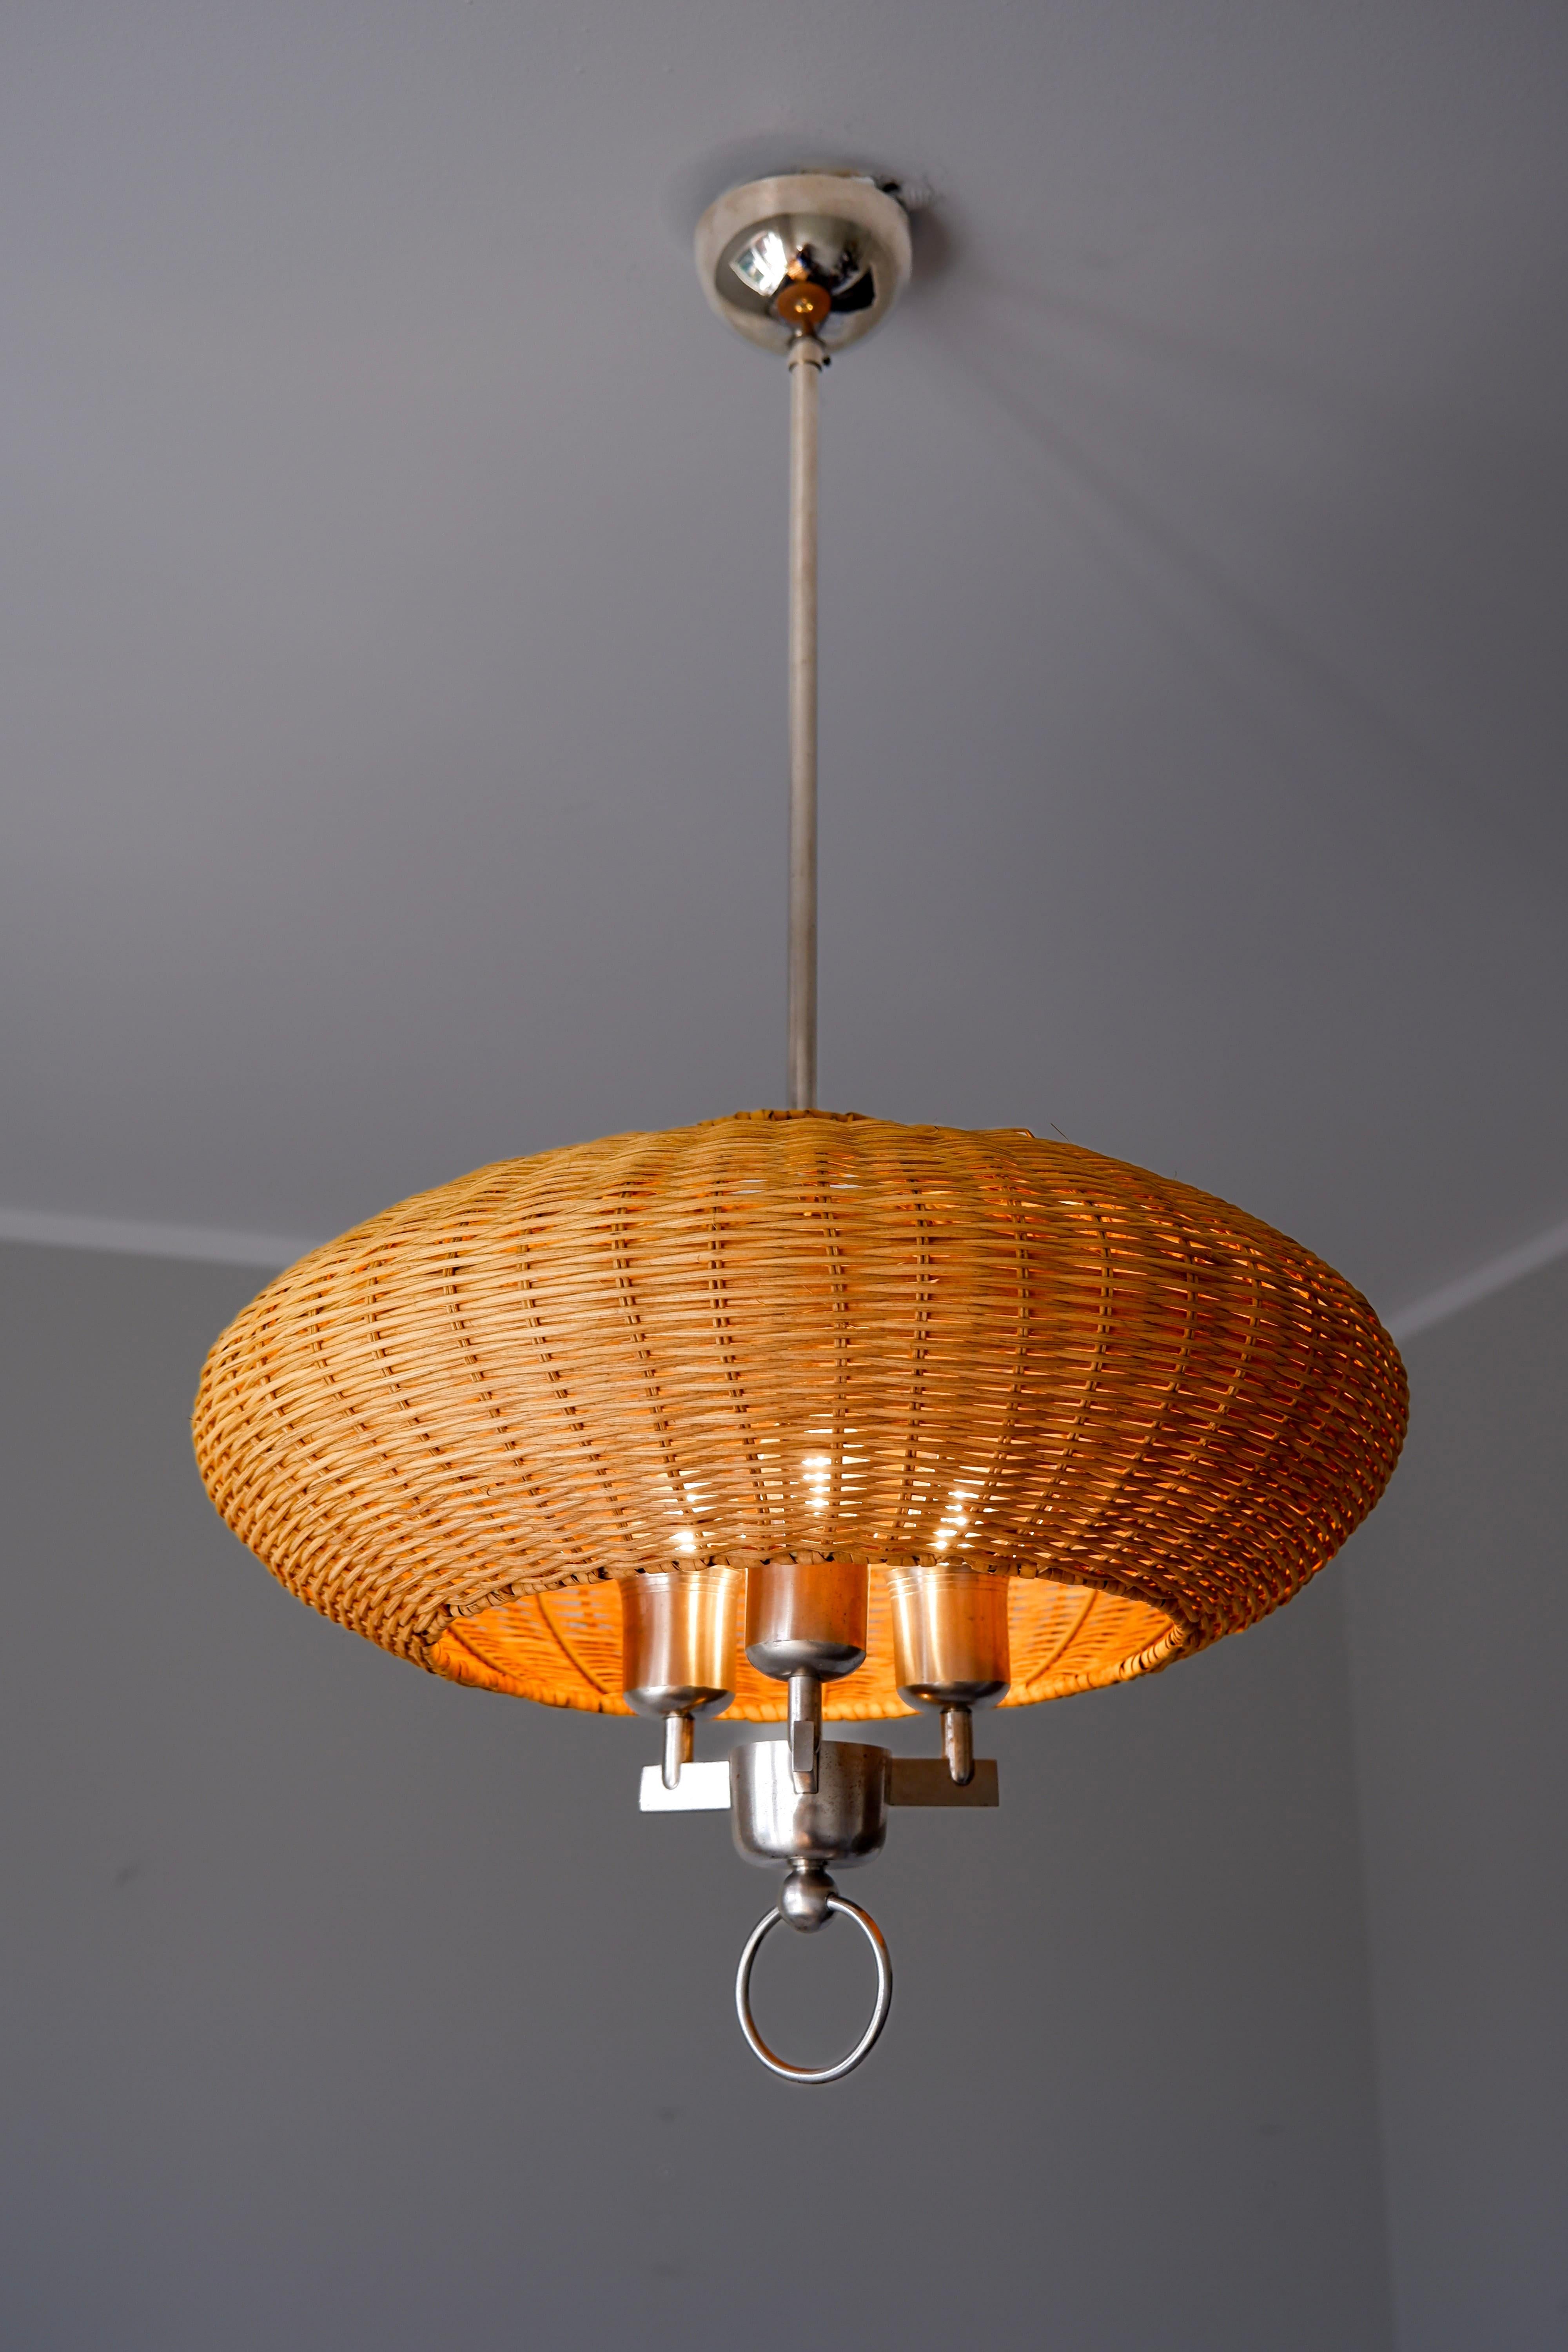 Paavo Tynell Deckenleuchte von Taito aus den 40er Jahren. Die Lampe ist aus nickelplattiertem Messing mit einem Schirm aus Holzstreifen, der nach dem Original restauriert wurde. Dieses Modell ist eines der ersten, das Paavo Tynell in den 40er Jahren